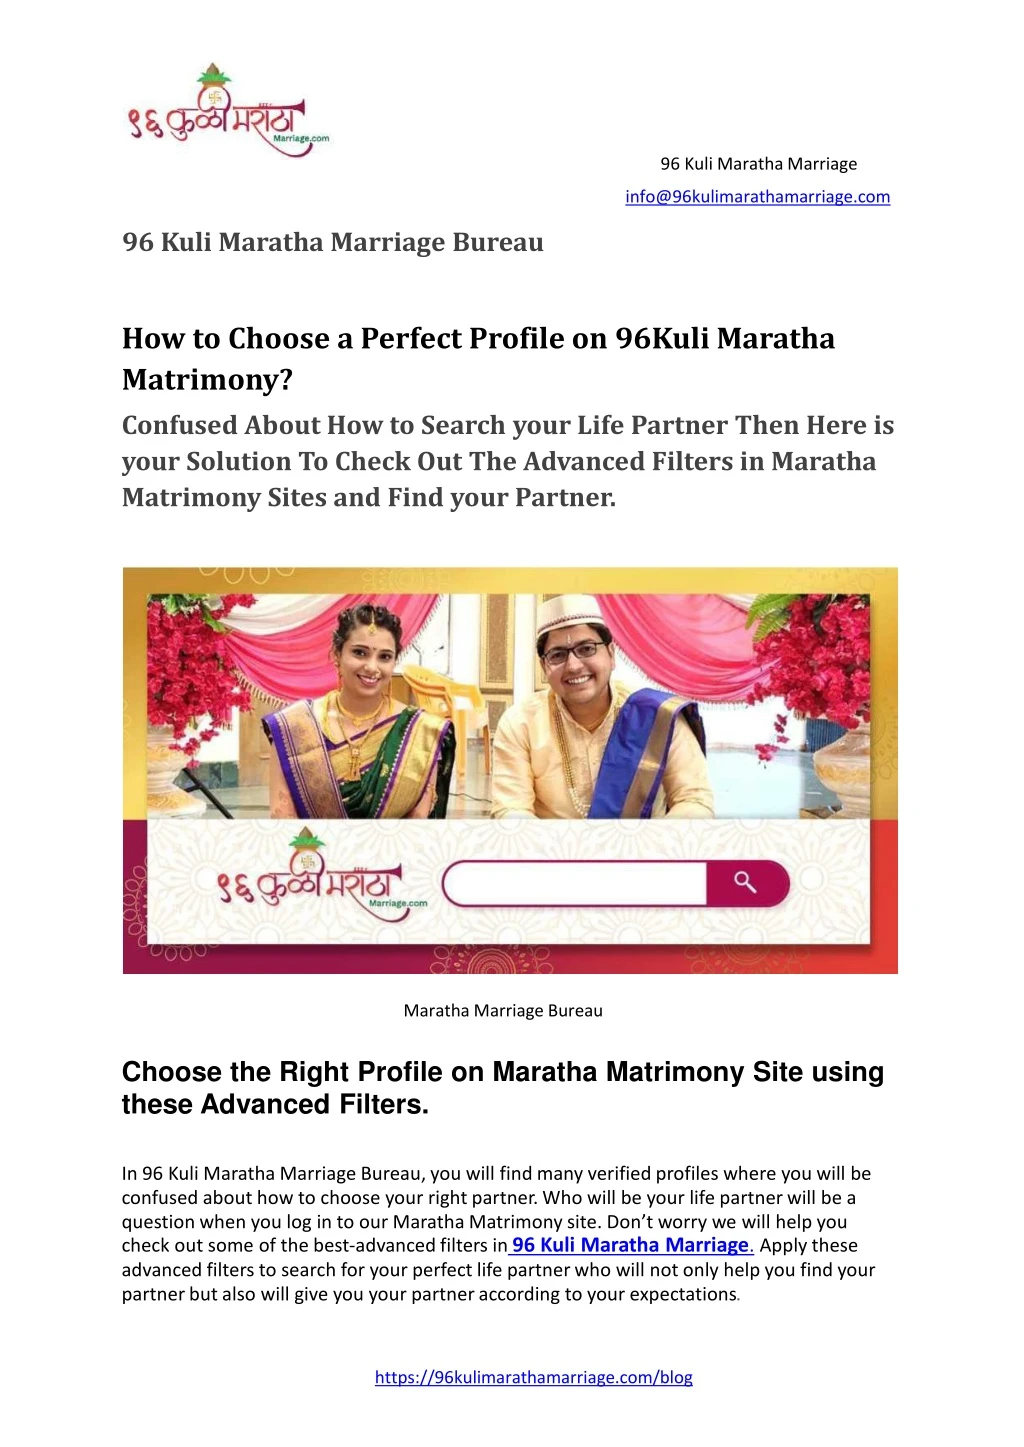 96 kuli maratha marriage